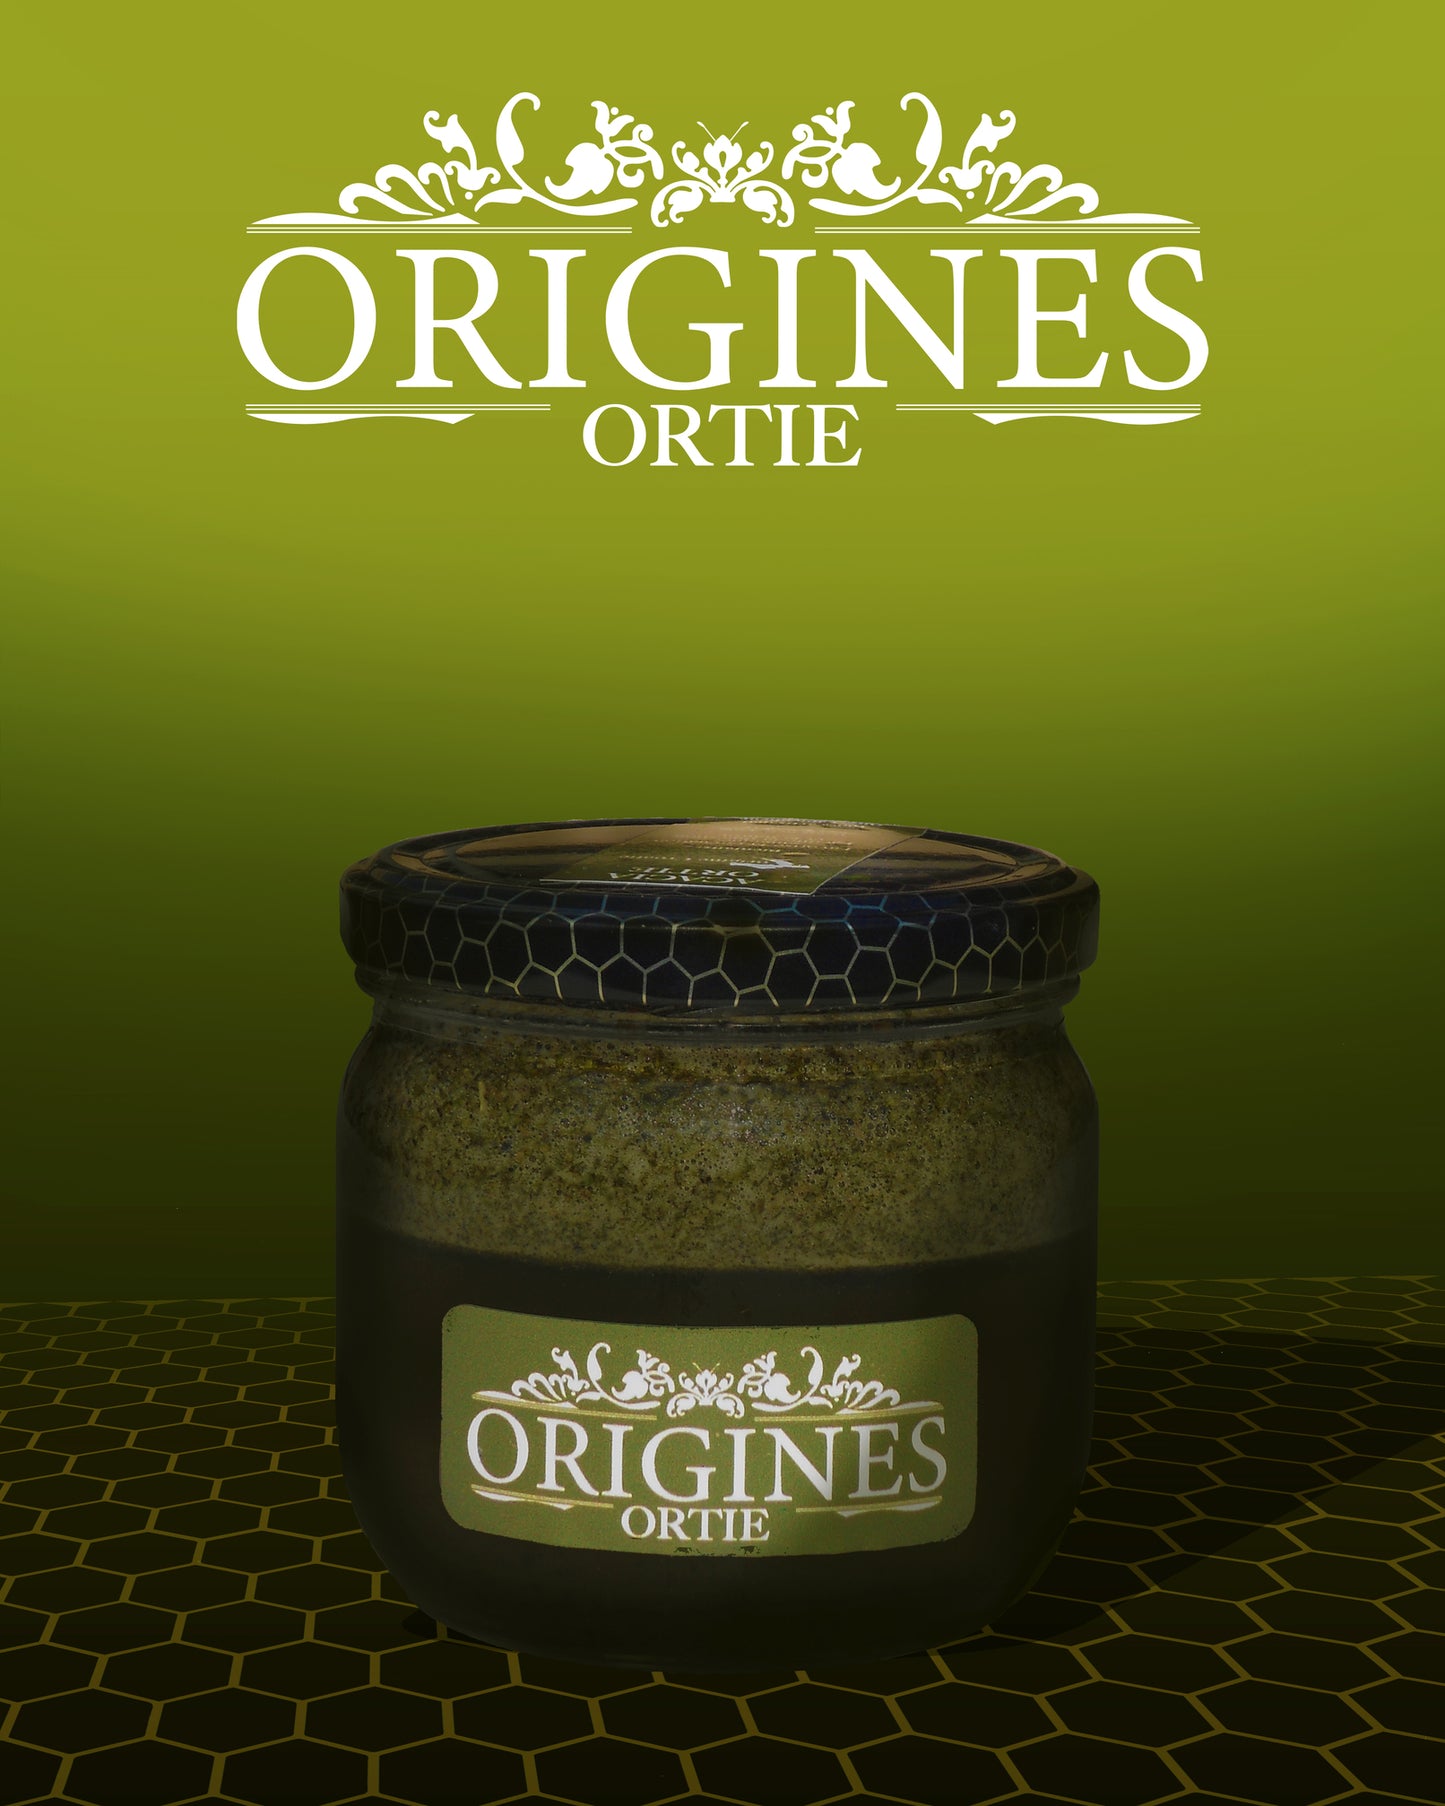 Notre pot de 380 g de miel contenant notre Miel à l'Ortie, reconnaissable à sa couleur verte distinctive.